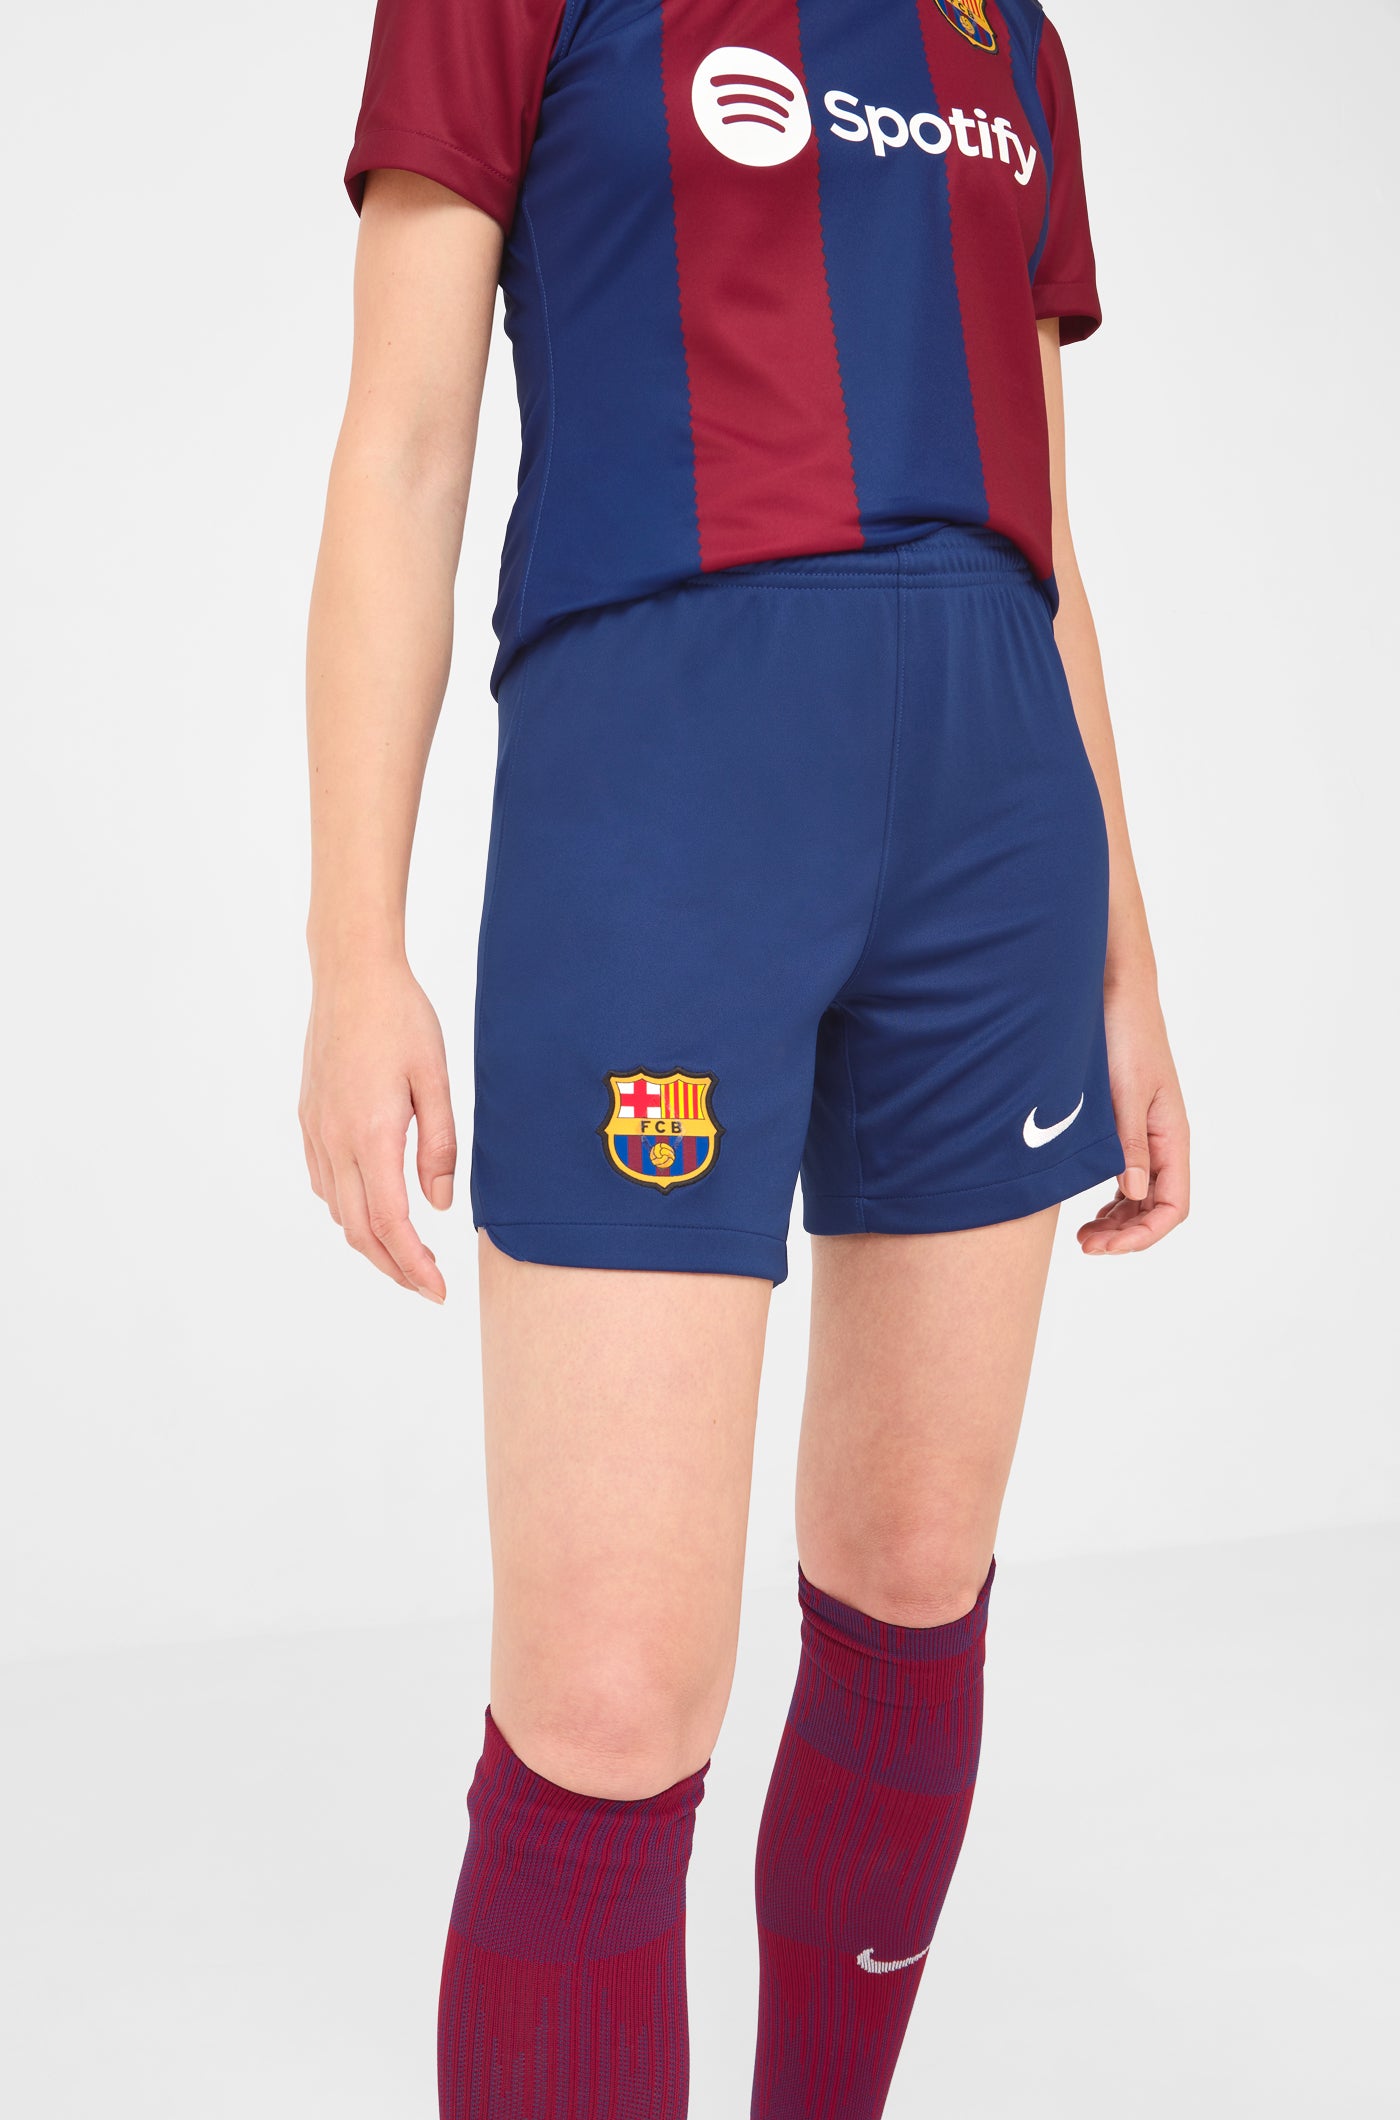 FC Barcelona 2019/20 Nike Home Kit - FOOTBALL FASHION